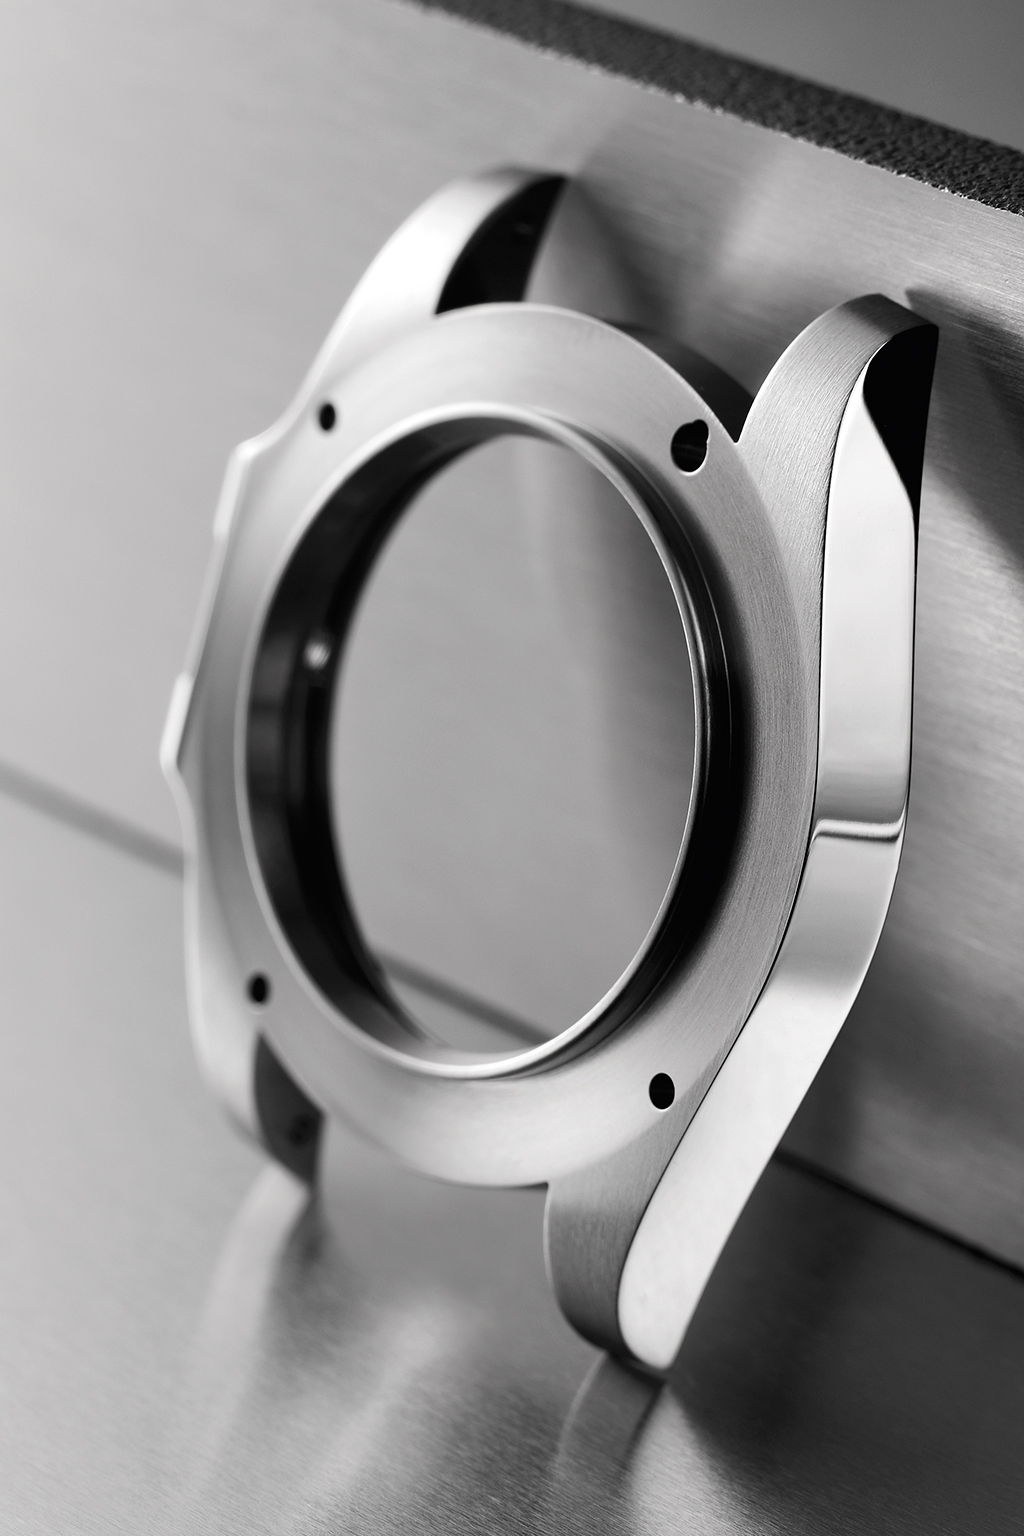 Caratteristica esclusiva L'ACCIAIO INOSSIDABILE 904L Rolex utilizza per le casse dei suoi orologi l'acciaio inossidabile 904L, generalmente impiegato nell alta tecnologia, nell industria spaziale e